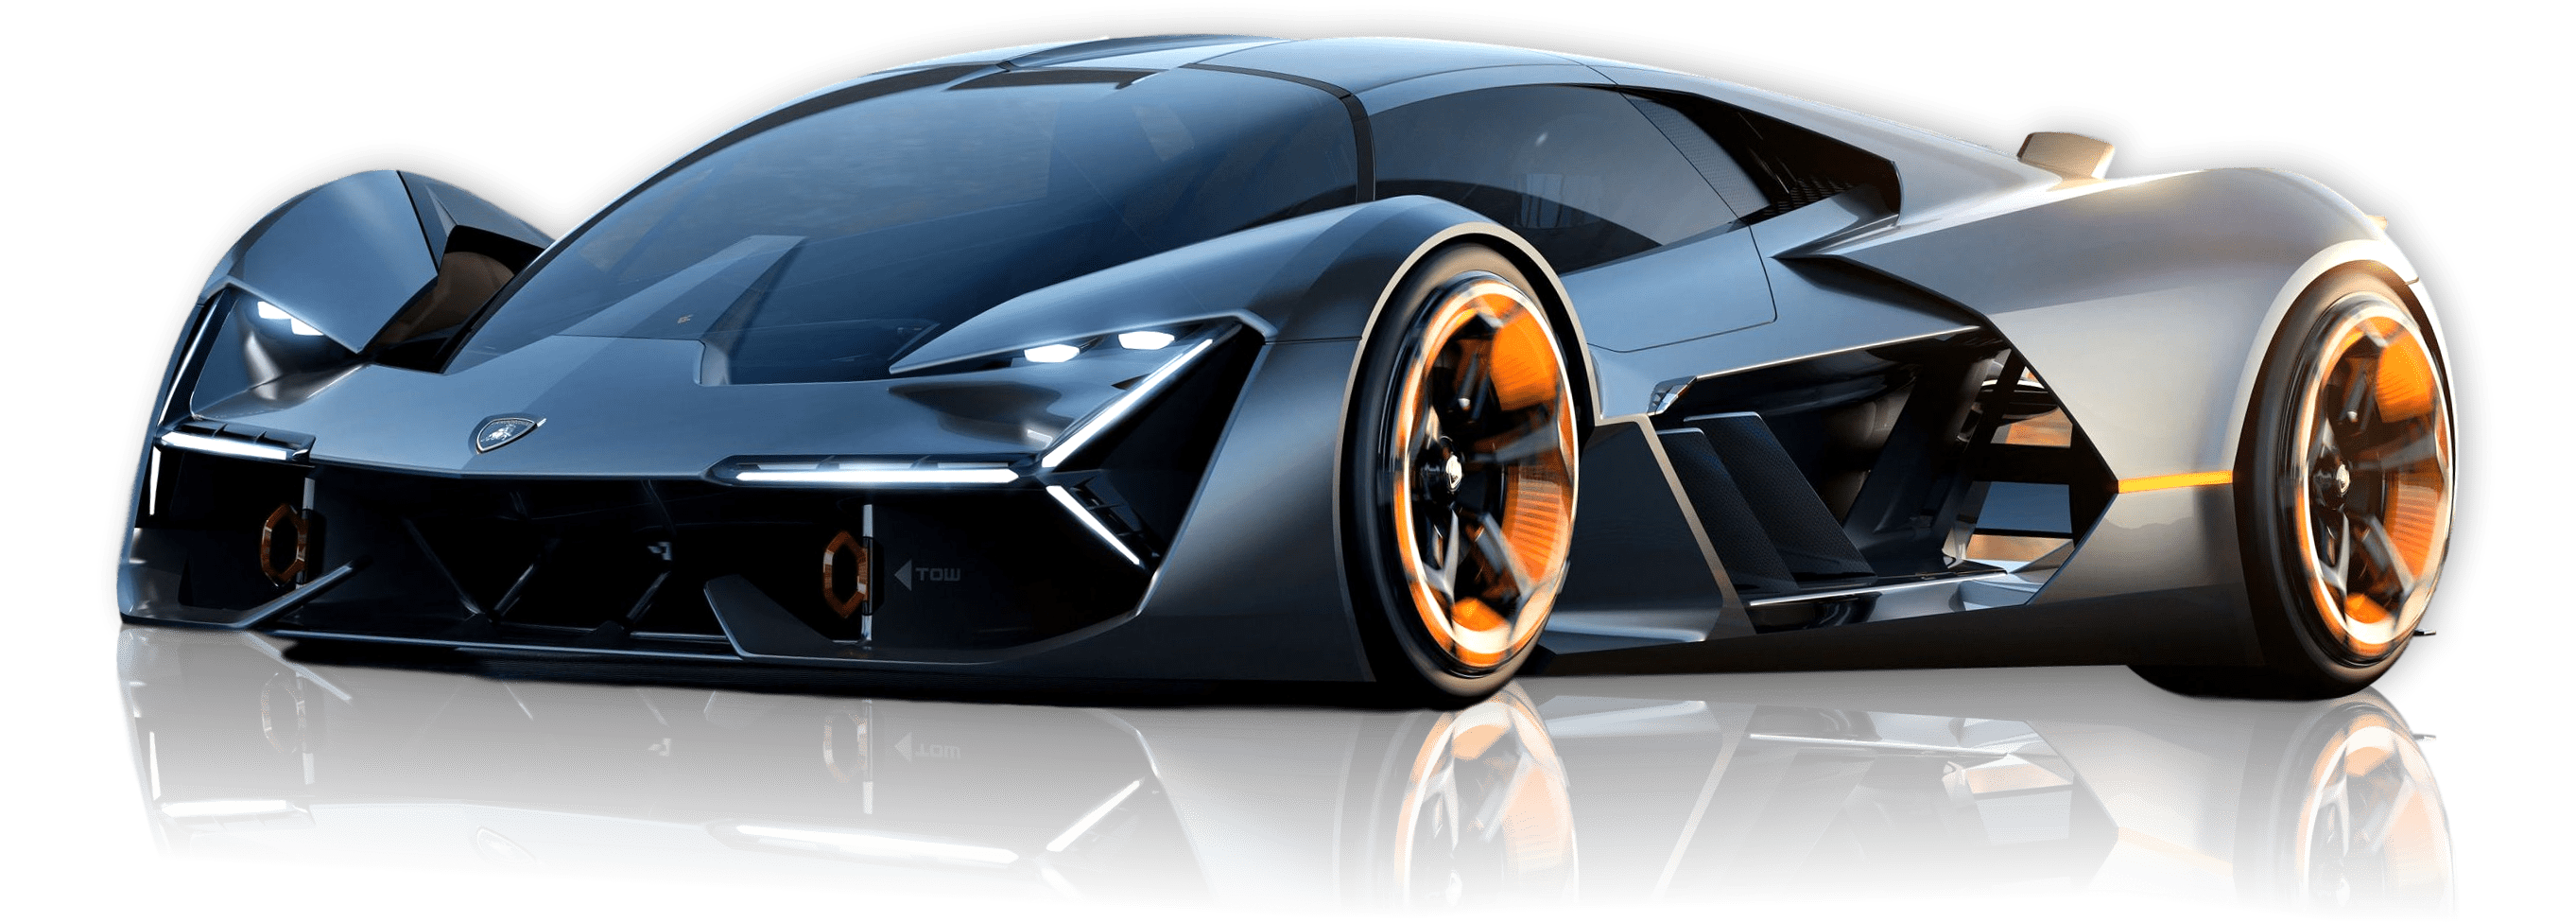 Lamborghini Terzo Millennio Transparent Images